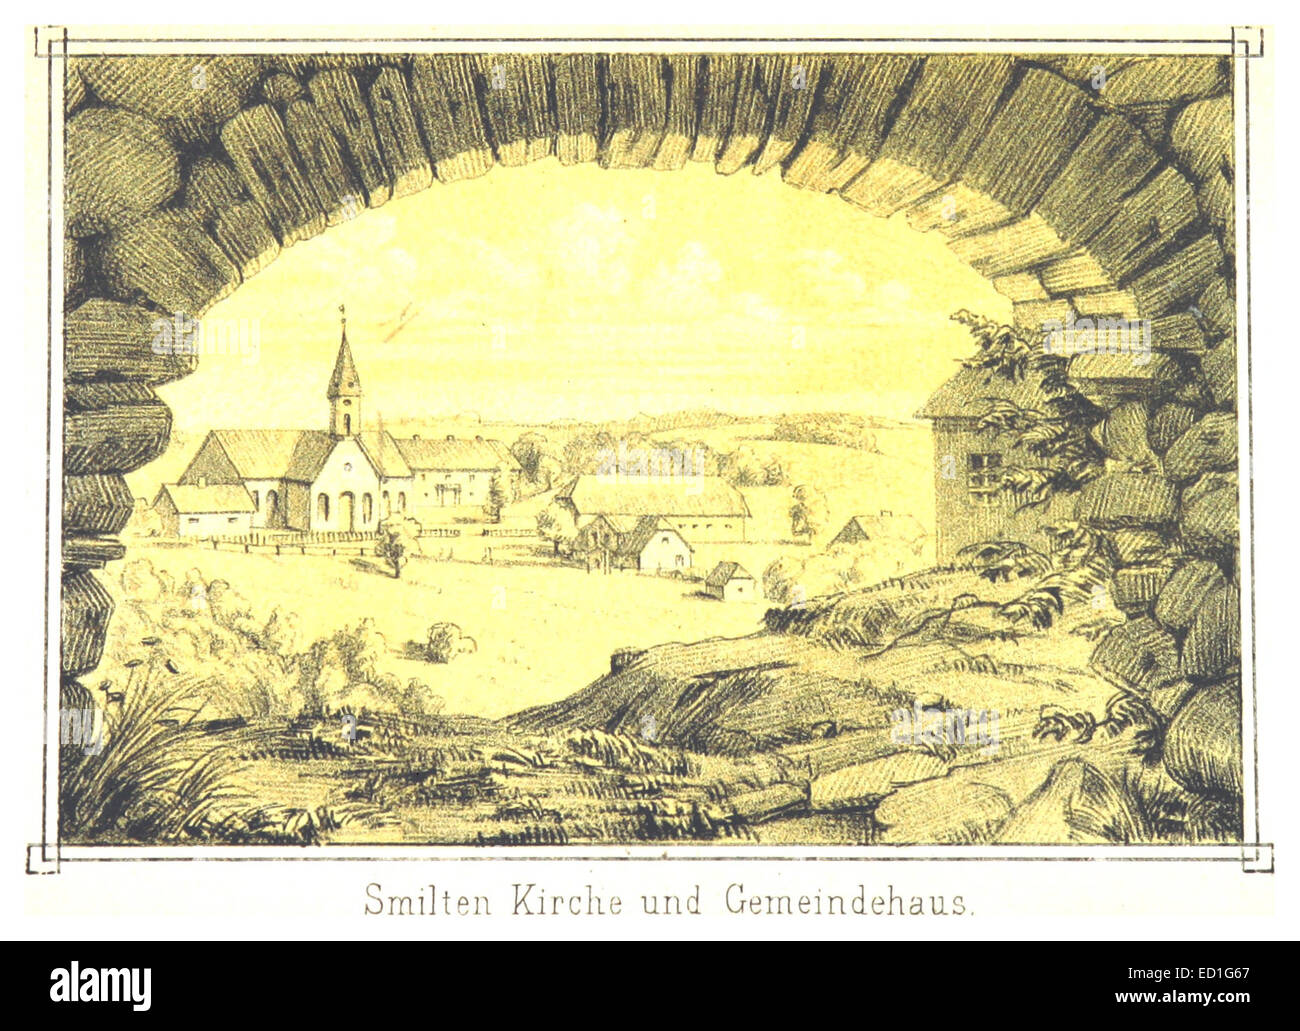 Smilten(1872)PG006 Kirche und Gemeindehaus Foto Stock